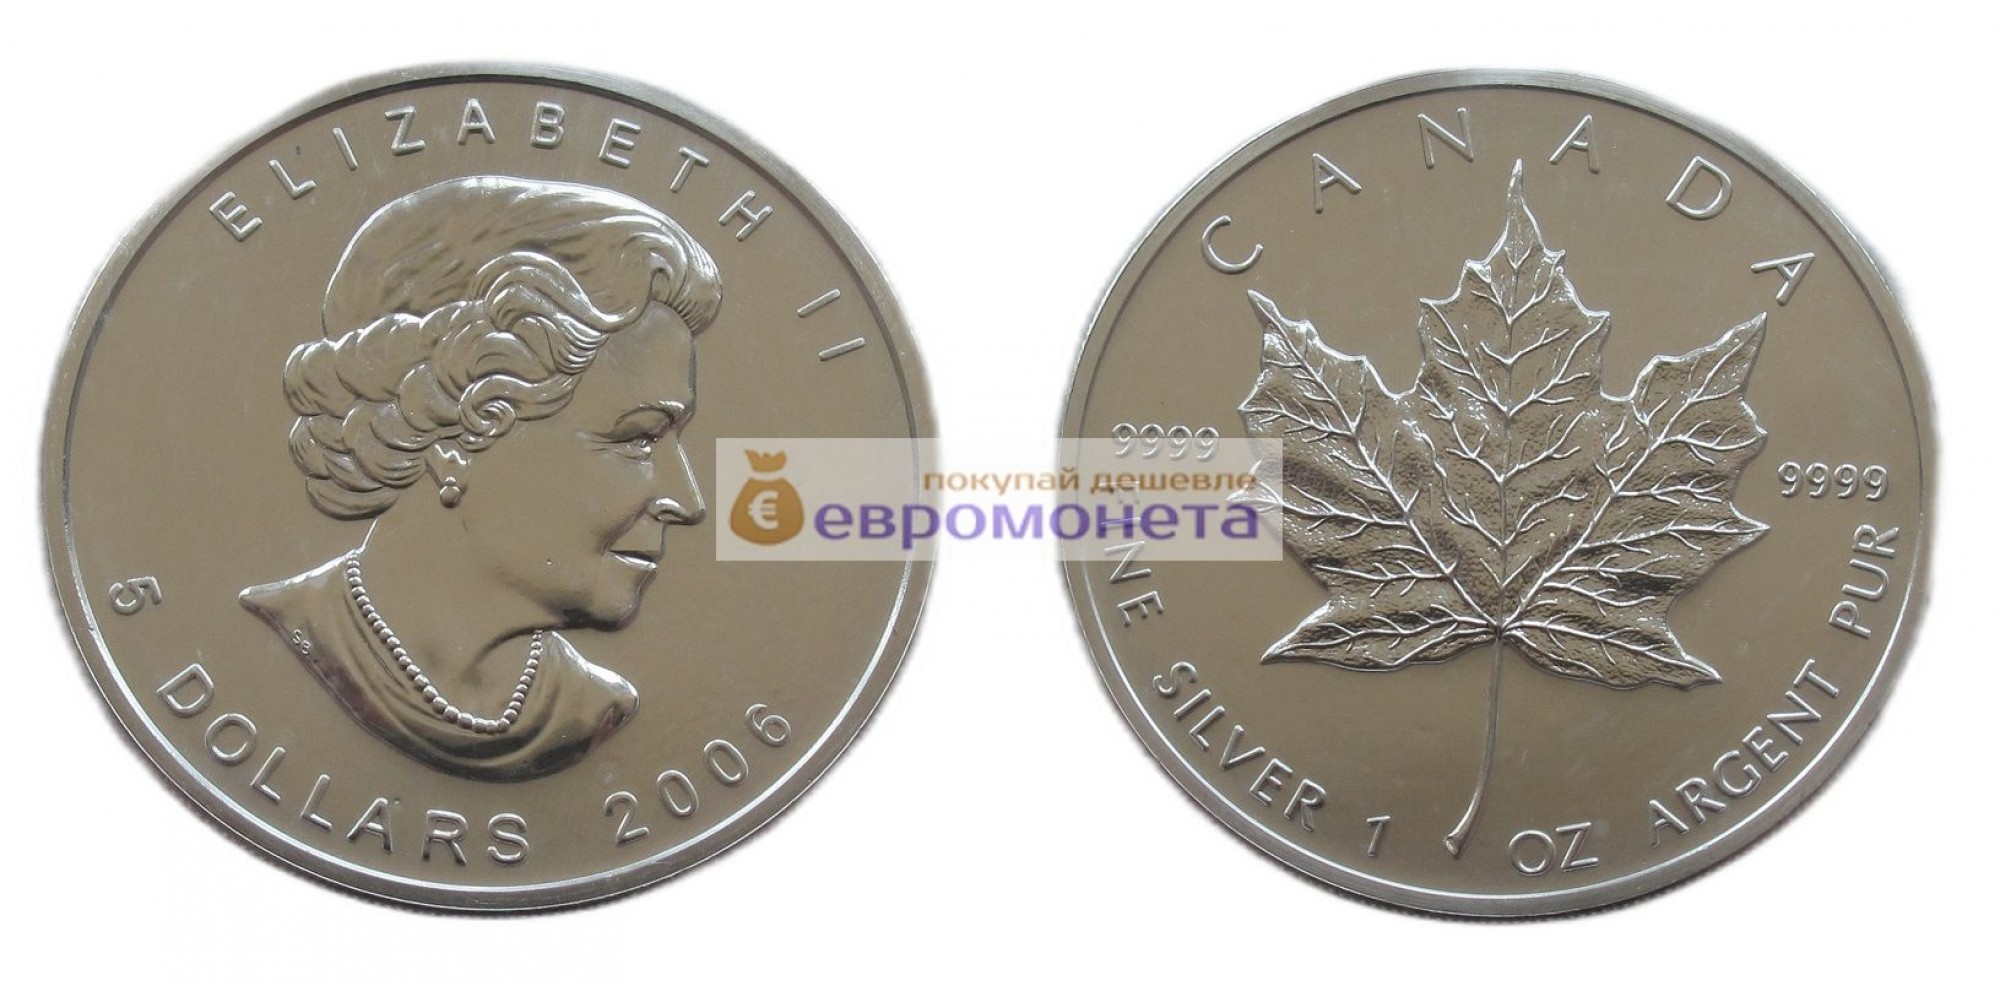 Канада 5 долларов 2006 год. Кленовый лист. Серебро